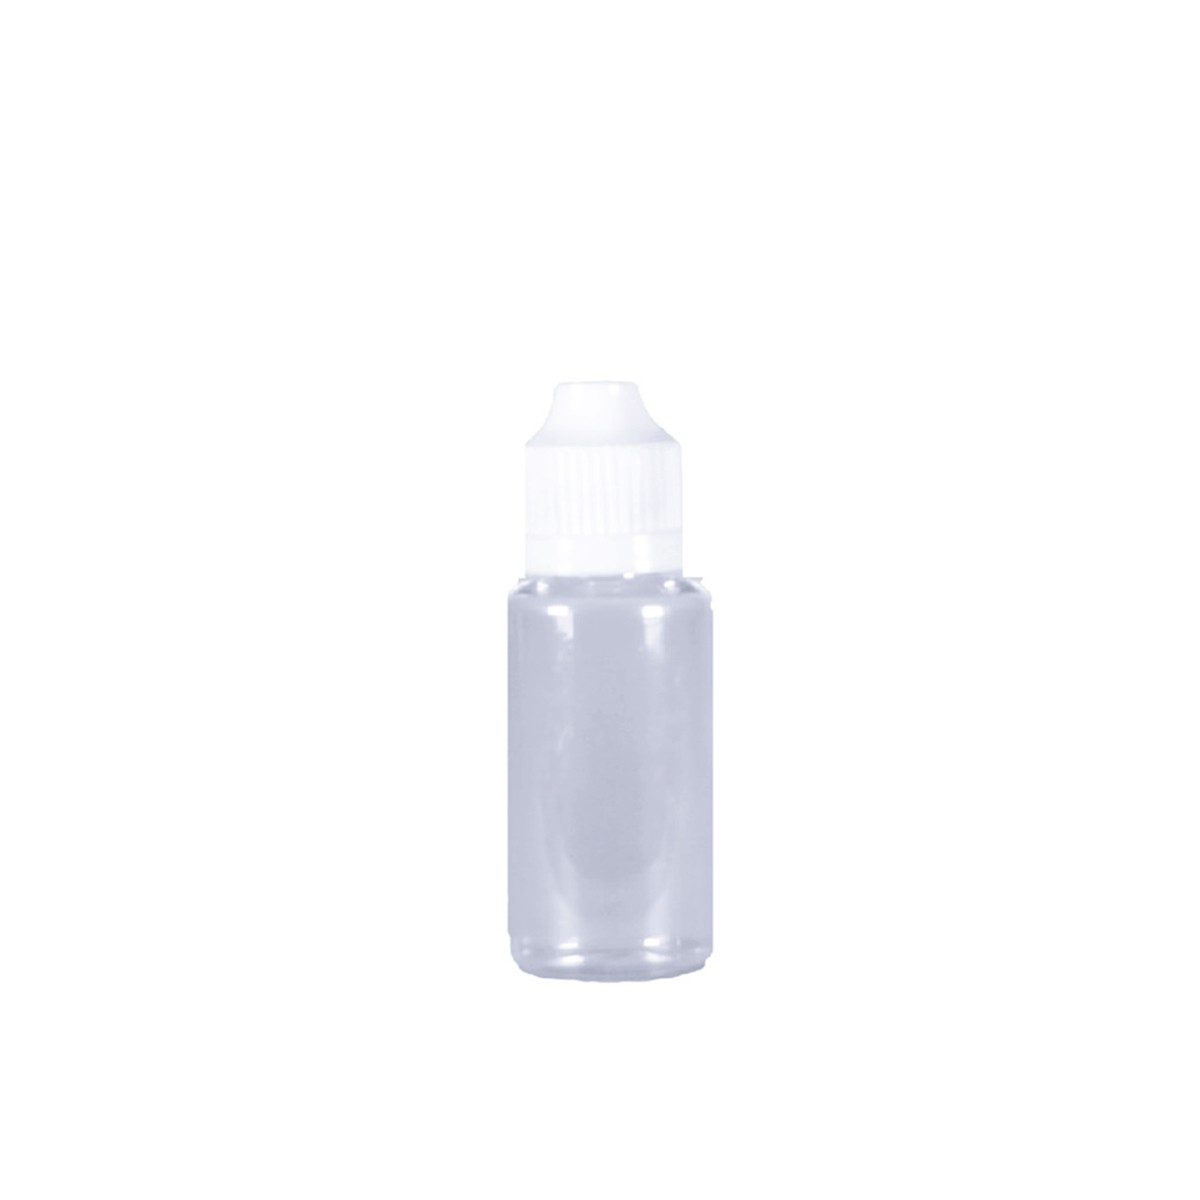 10ml, PET, Child Proof Dropper Bottle, White Cap